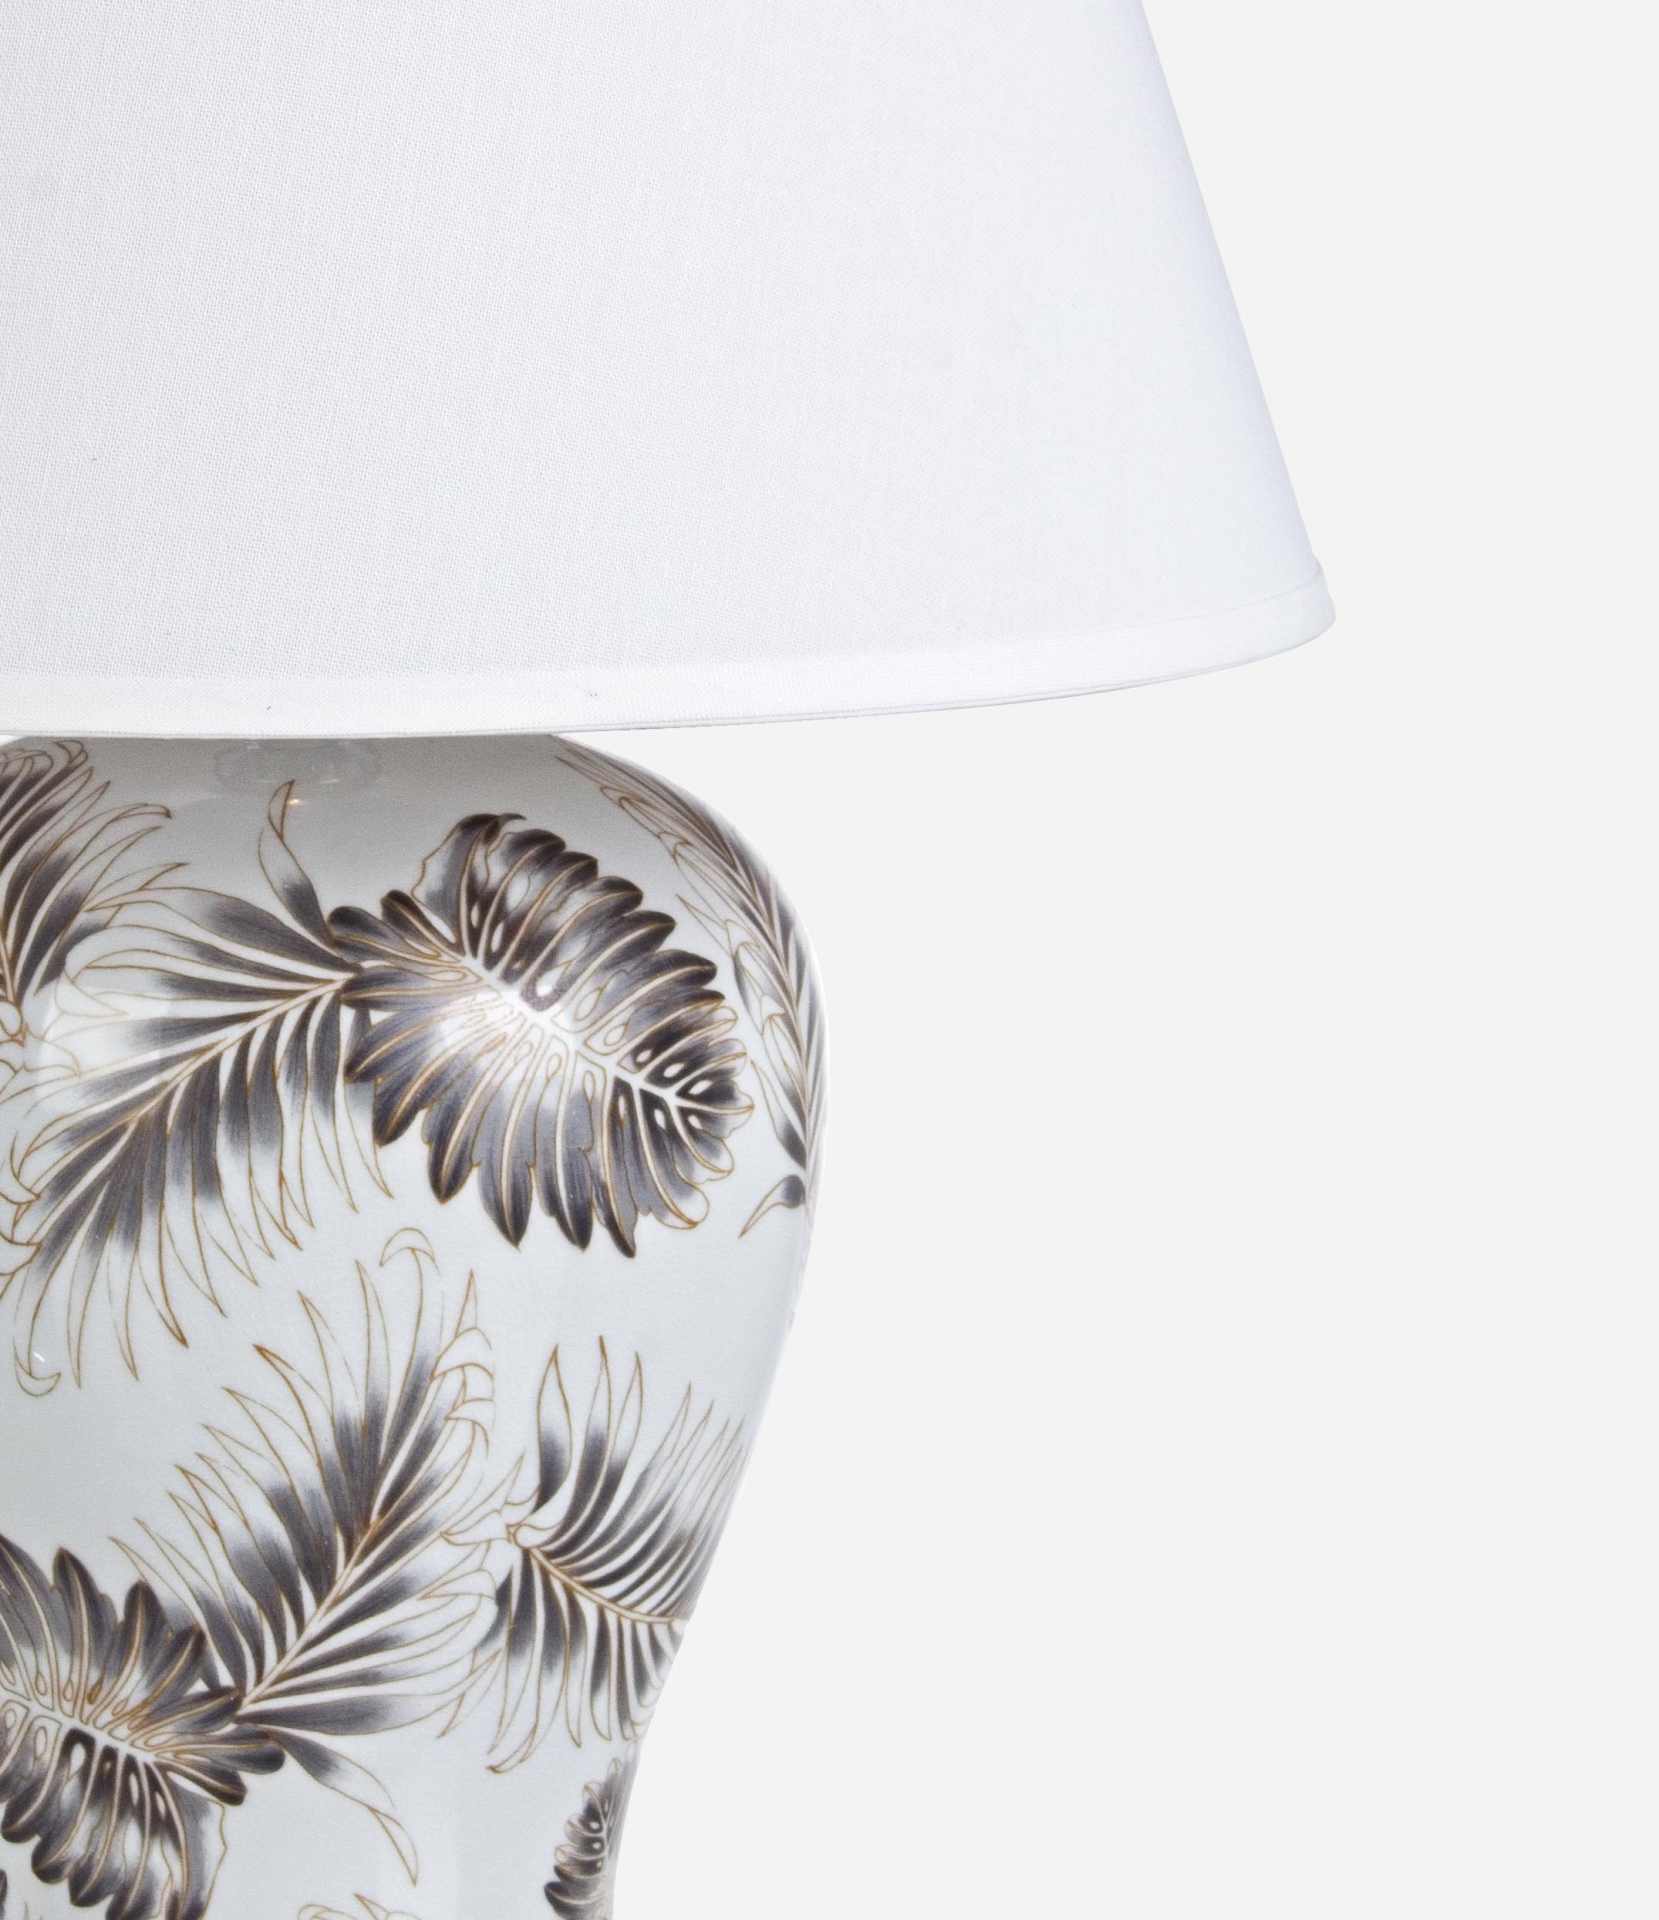 Die Tischleuchte Leaf überzeugt mit ihrem klassischen Design. Gefertigt wurde sie aus Porzellan, welches einen weißen Farbton besitzt. Die Lampenschirme ist aus Polyester und hat eine weiße Farbe. Die Lampe besitzt eine Höhe von 64 cm.